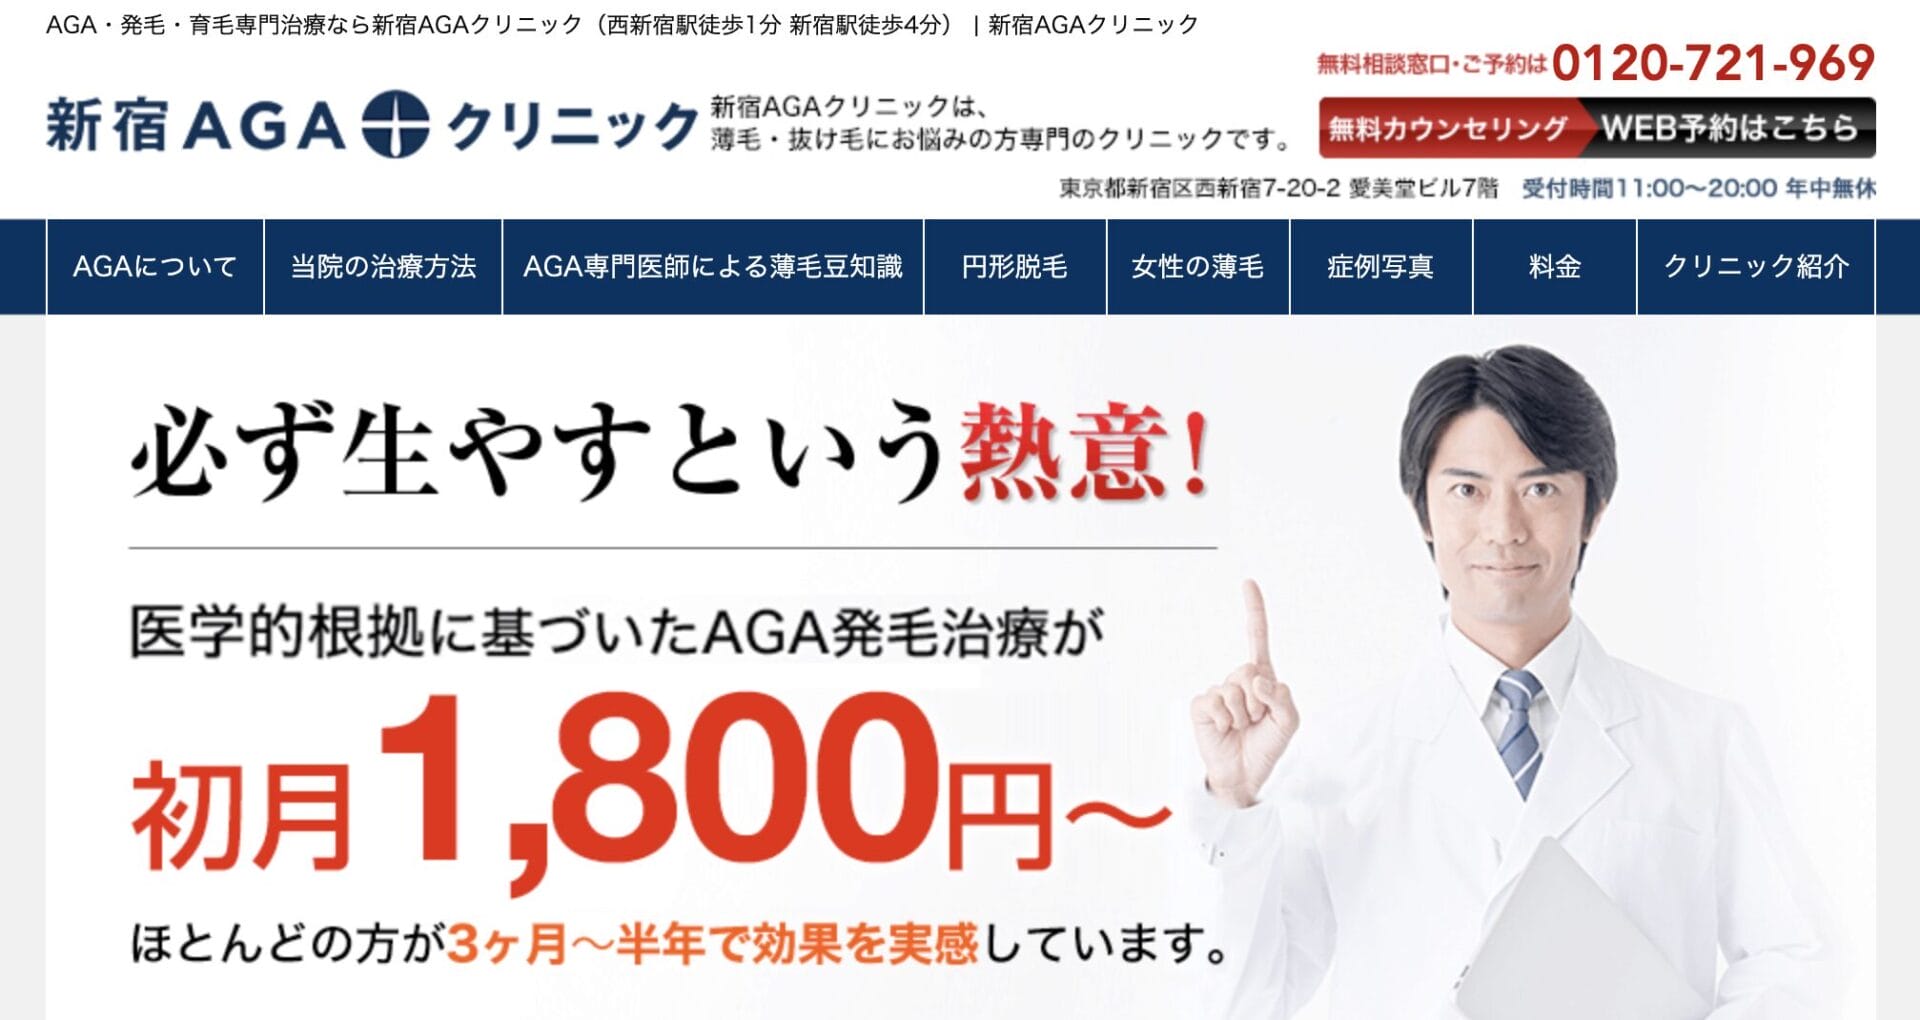 新宿AGAクリニック公式サイト